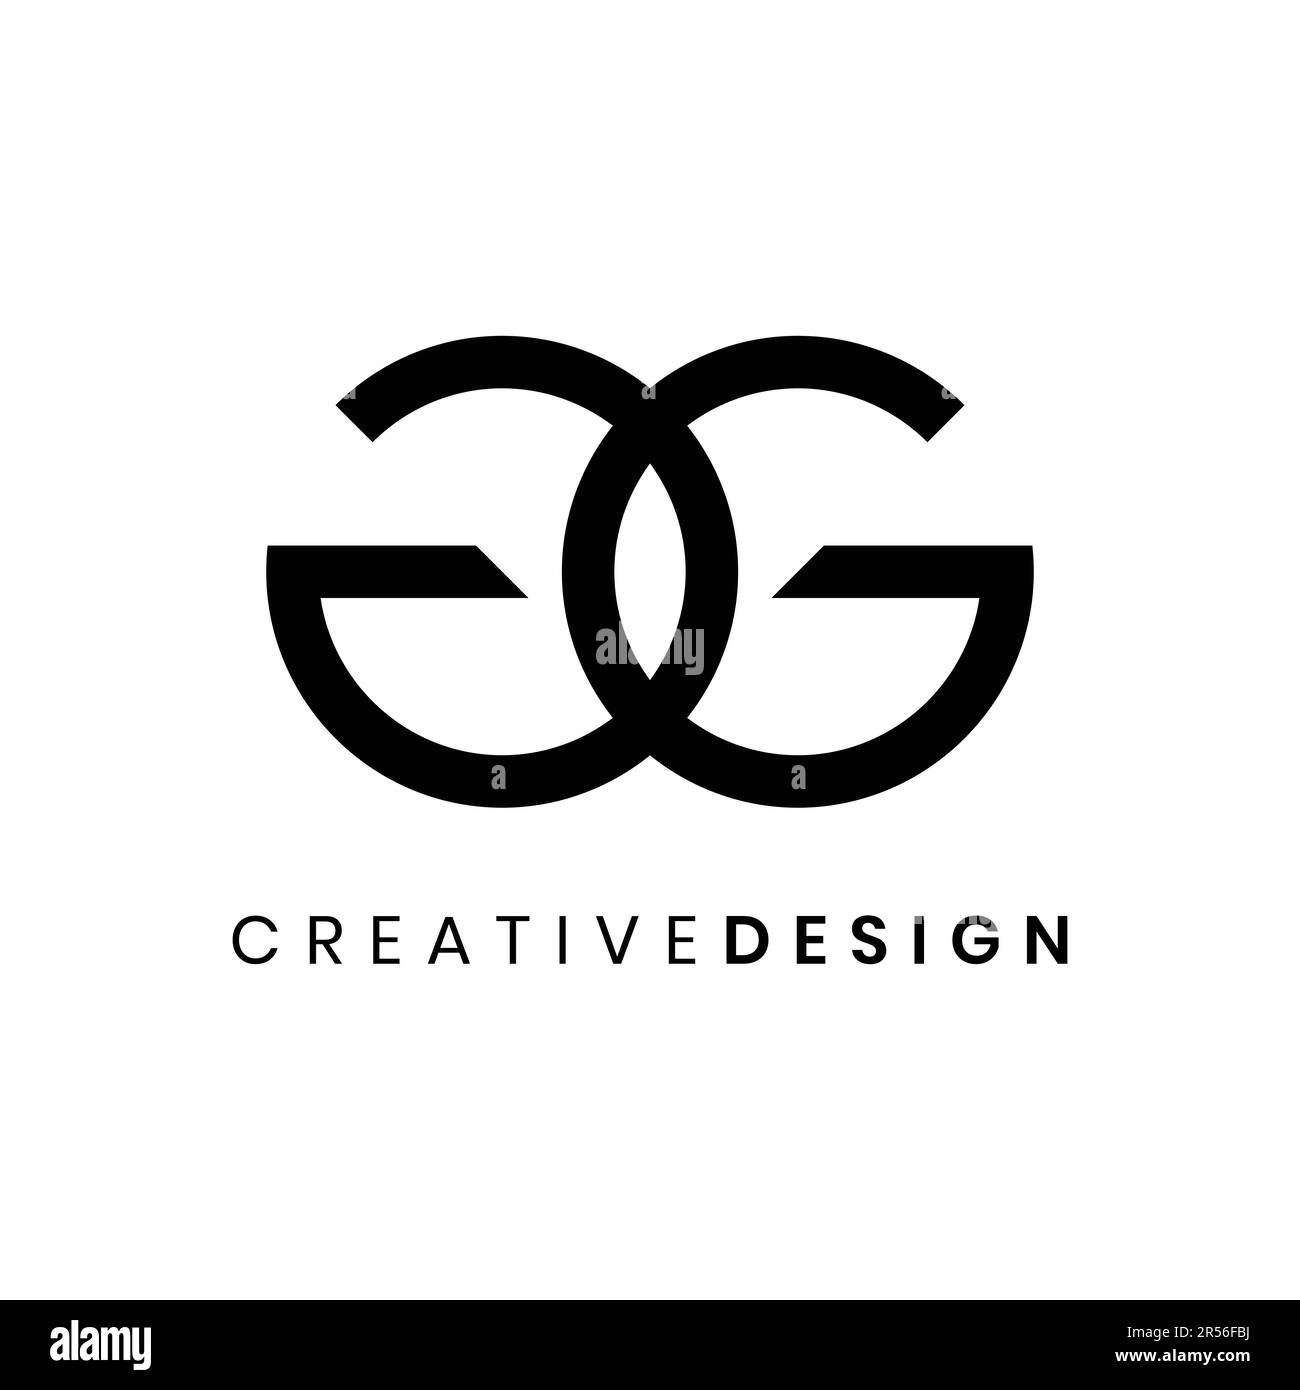 Illustration vectorielle élégante et minimaliste avec logo GG Illustration de Vecteur